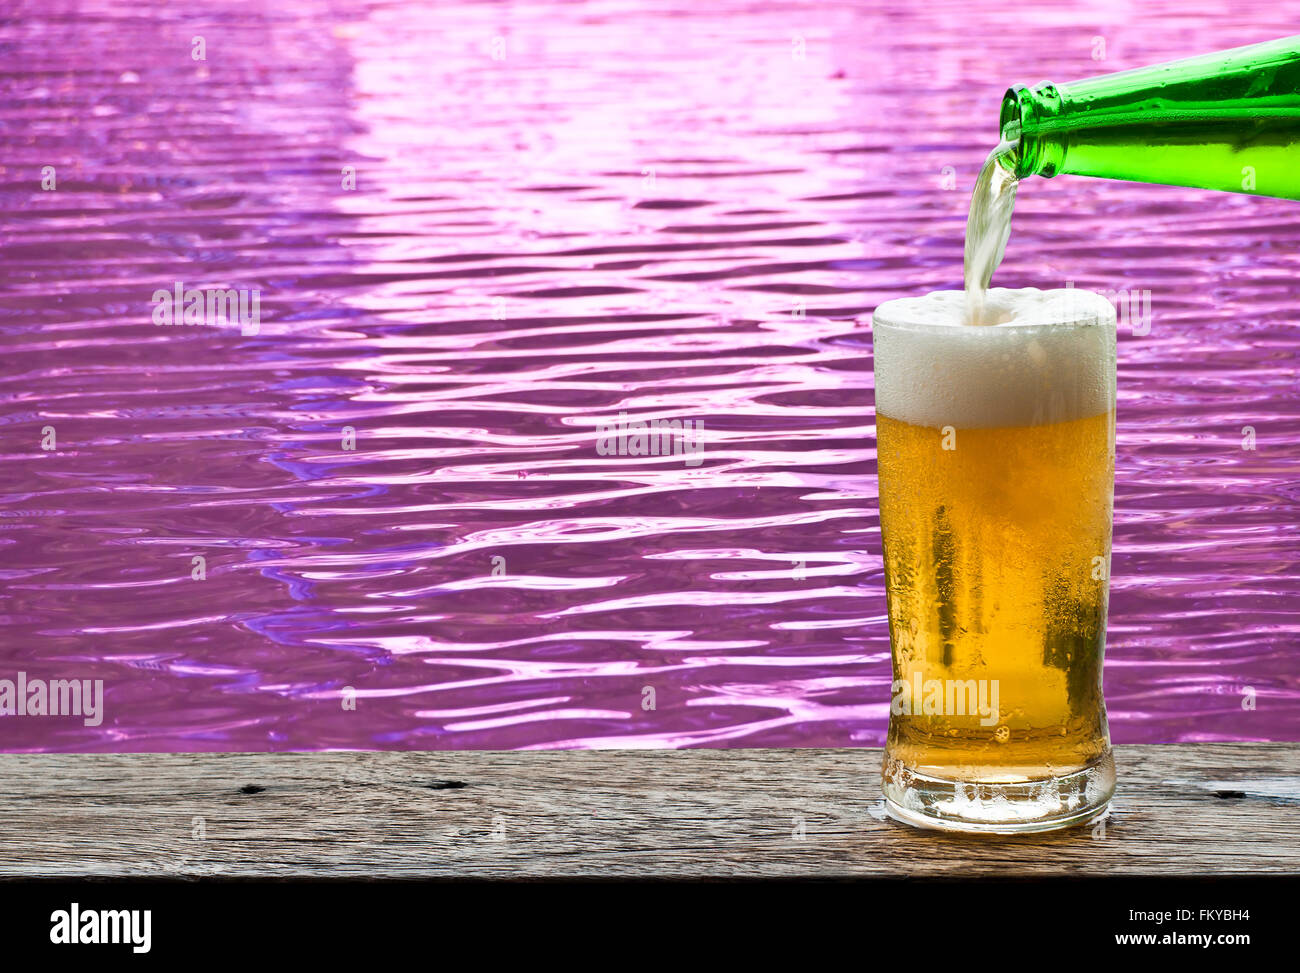 La Bière avec de l'eau violet sur fond d'ondulation. Banque D'Images